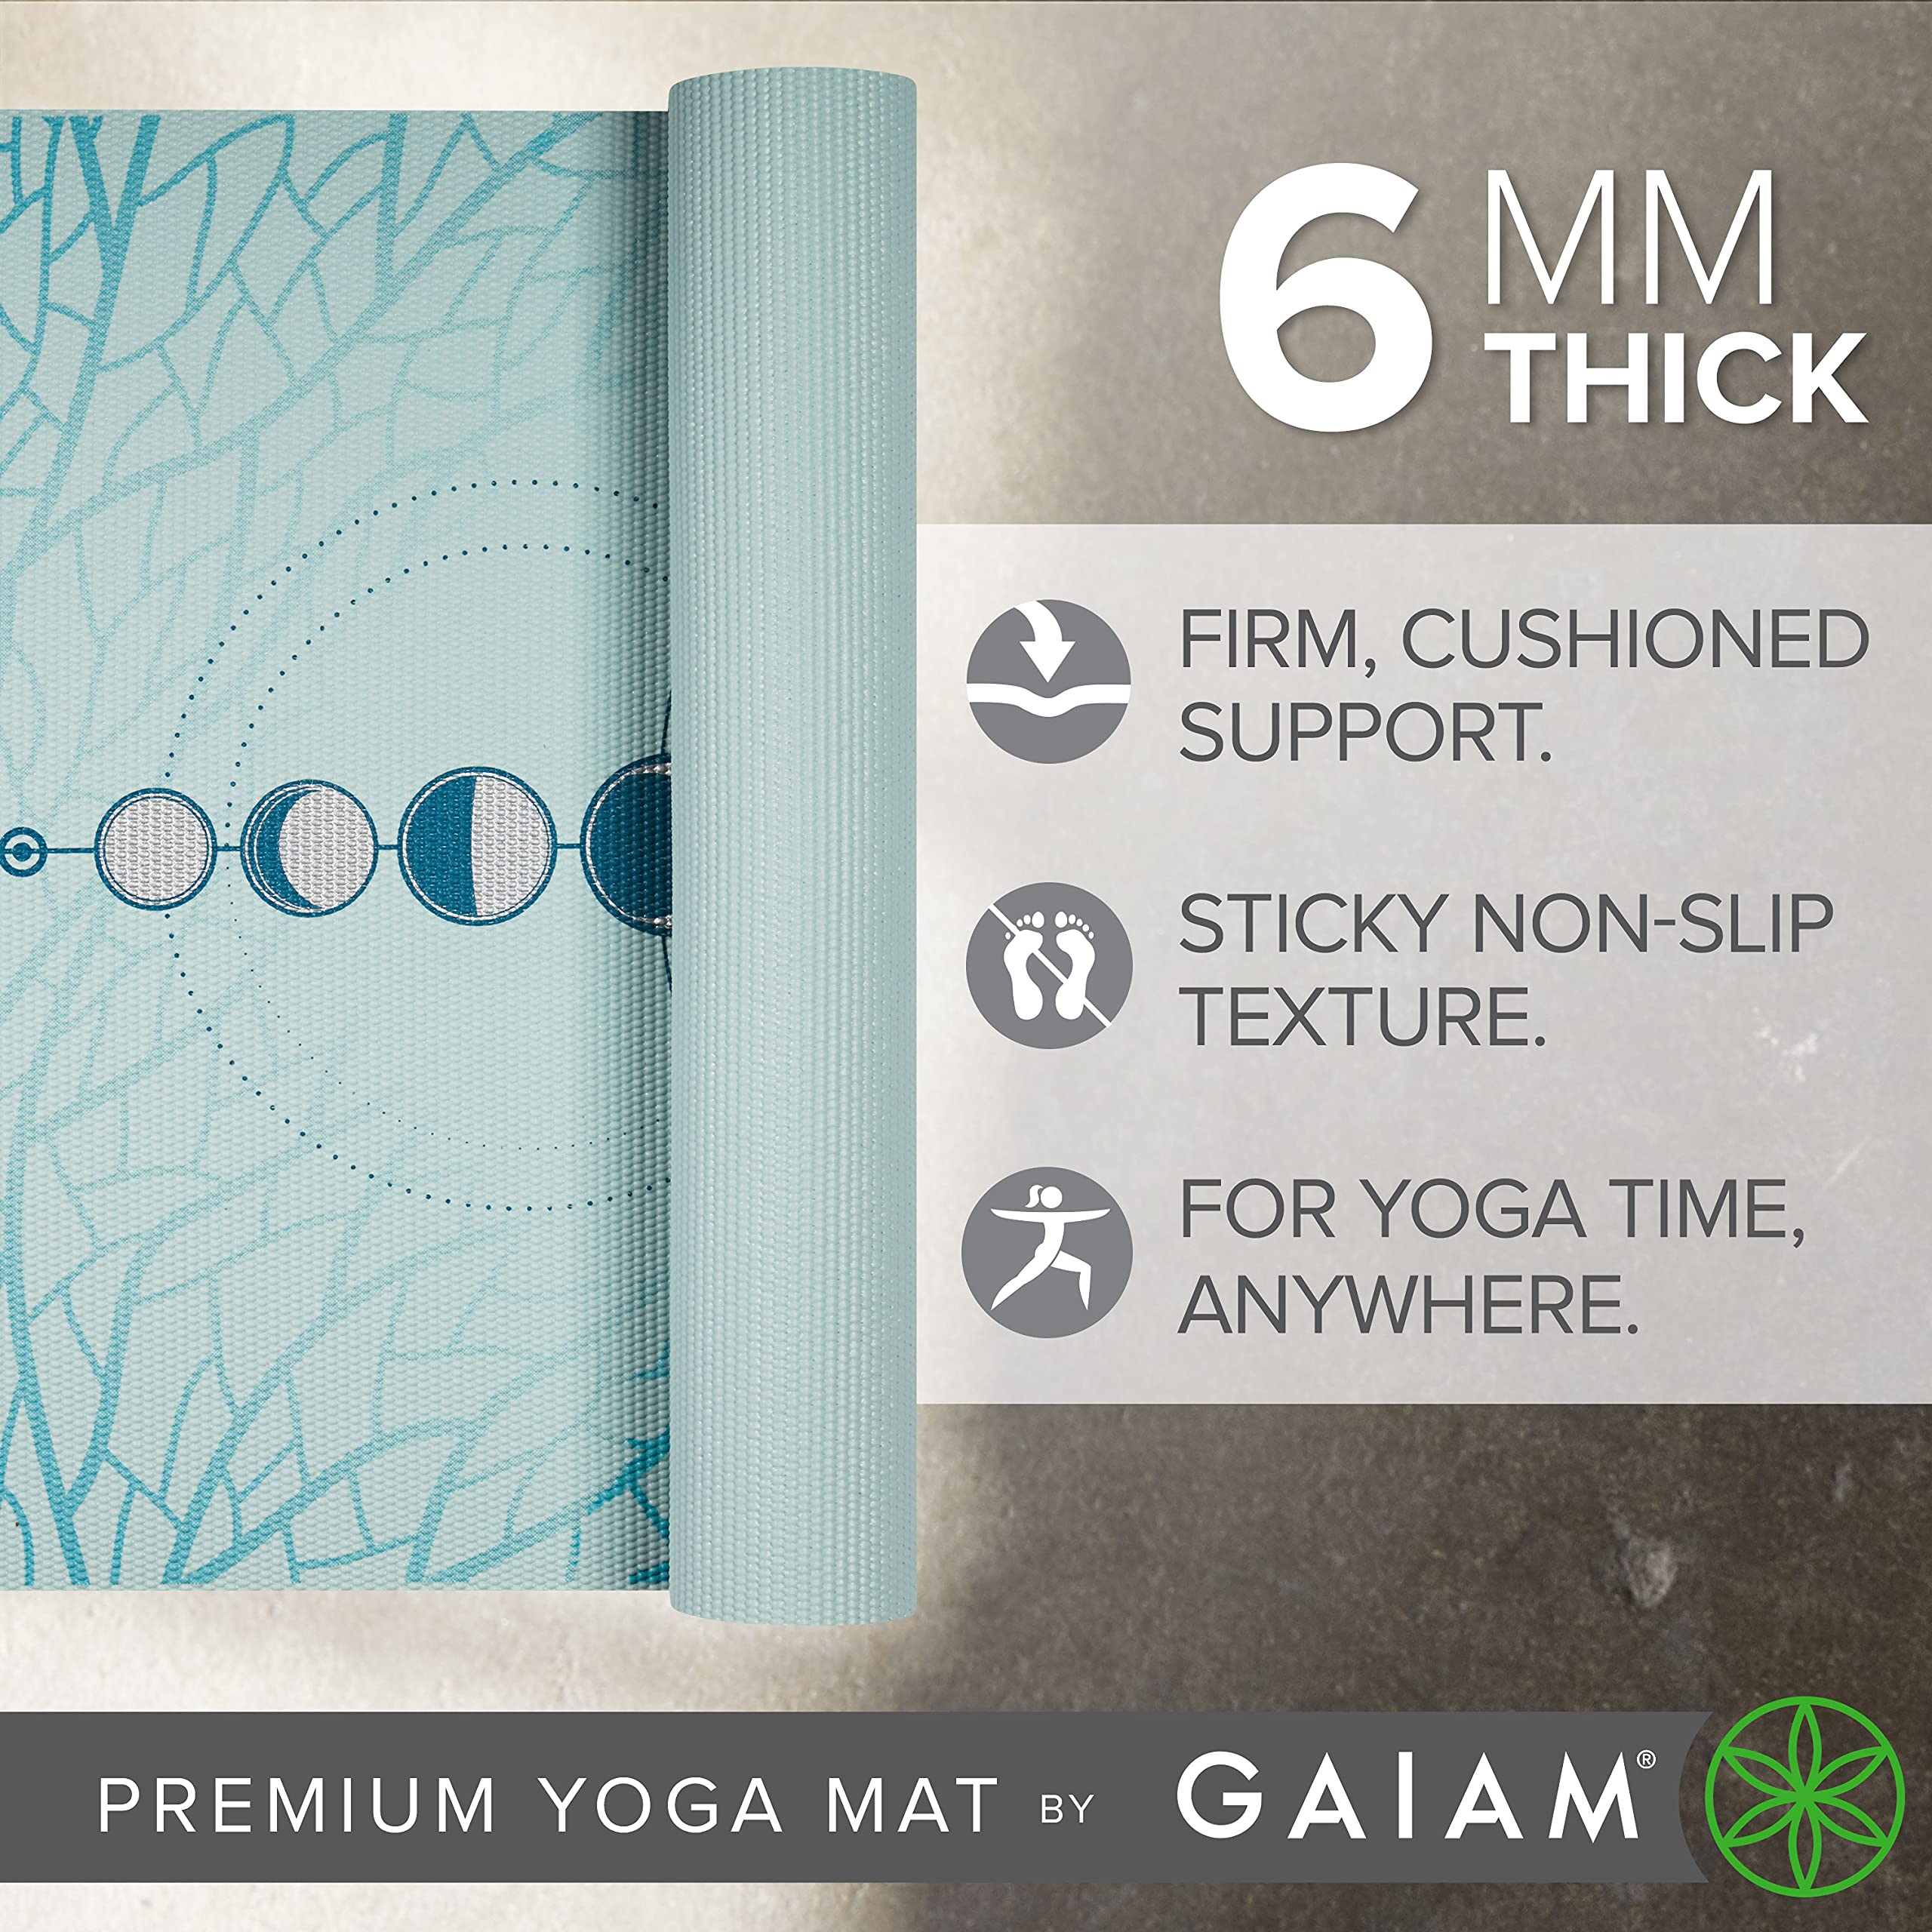 Gaiam Capri Printed Yoga Mat 68 6mm Extra Thick at